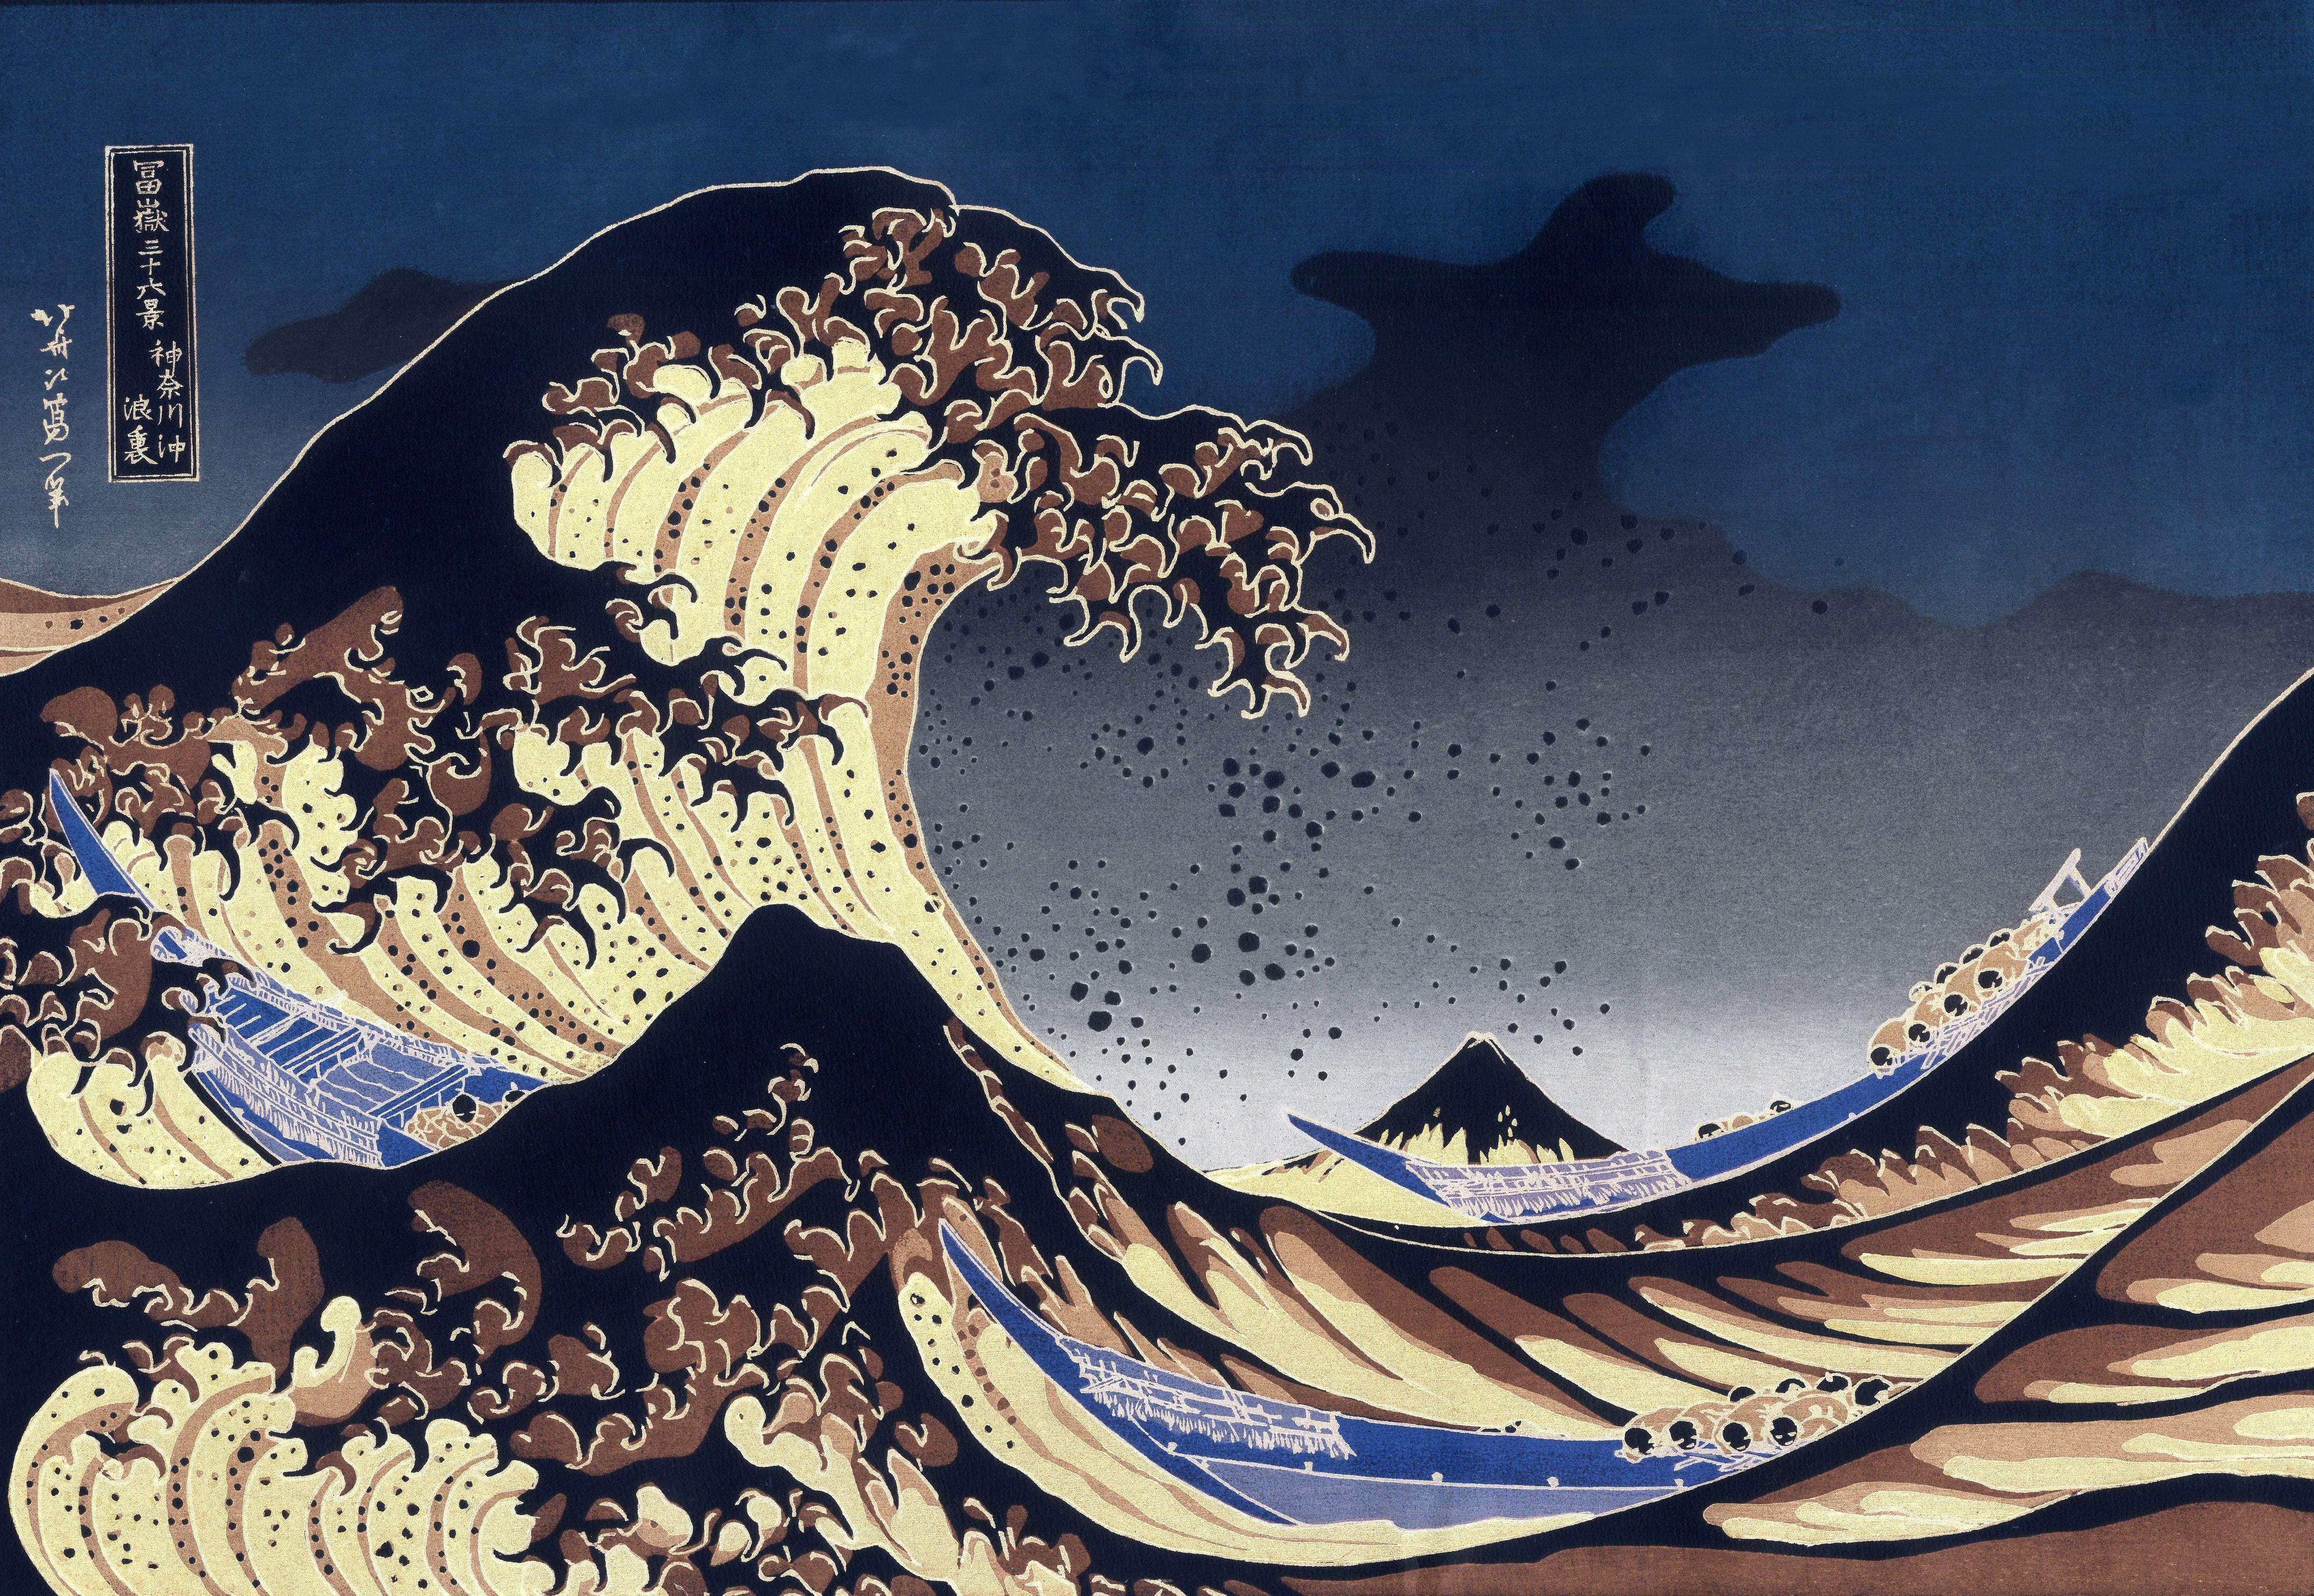 Japan, paintings, waves, boats, vehicles, The Great Wave off Kanagawa.